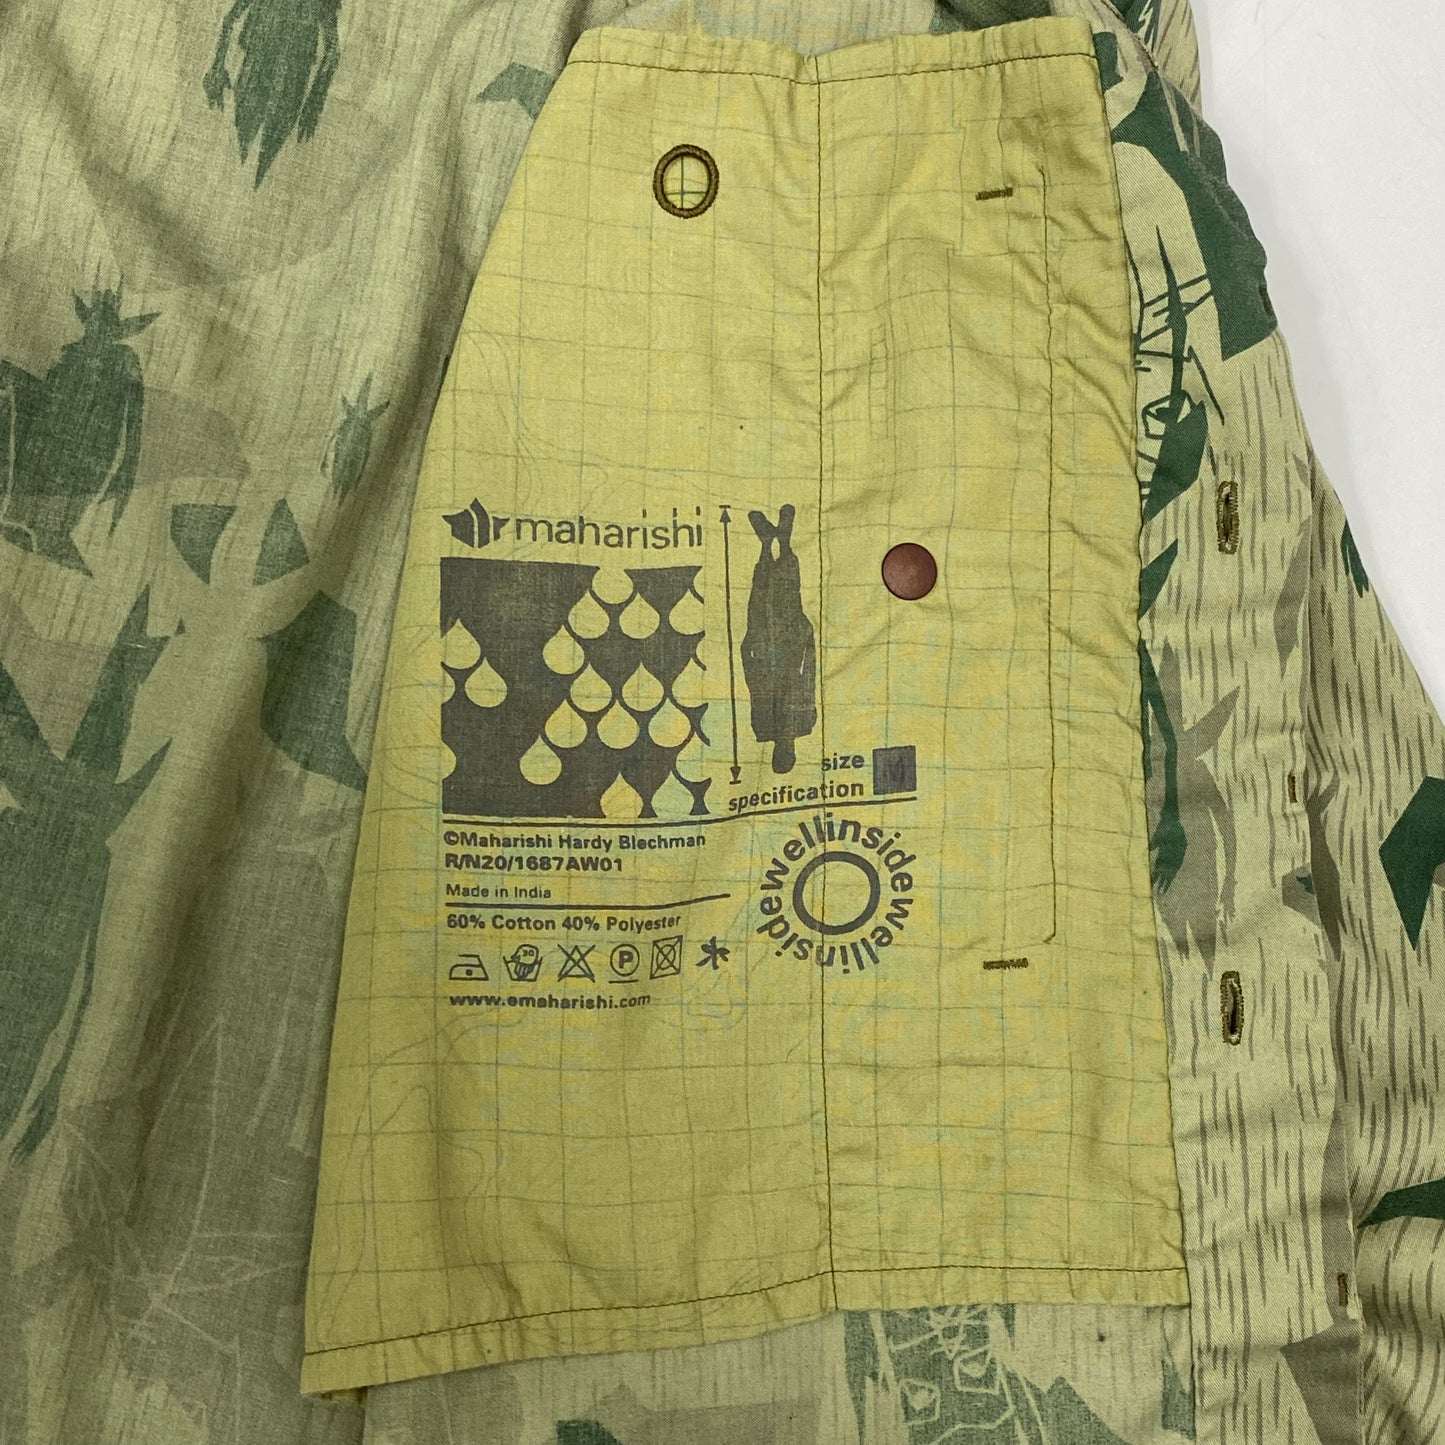 Maharishi x Futura AW01 Pointman Stash Pocket Shirt - M (L)